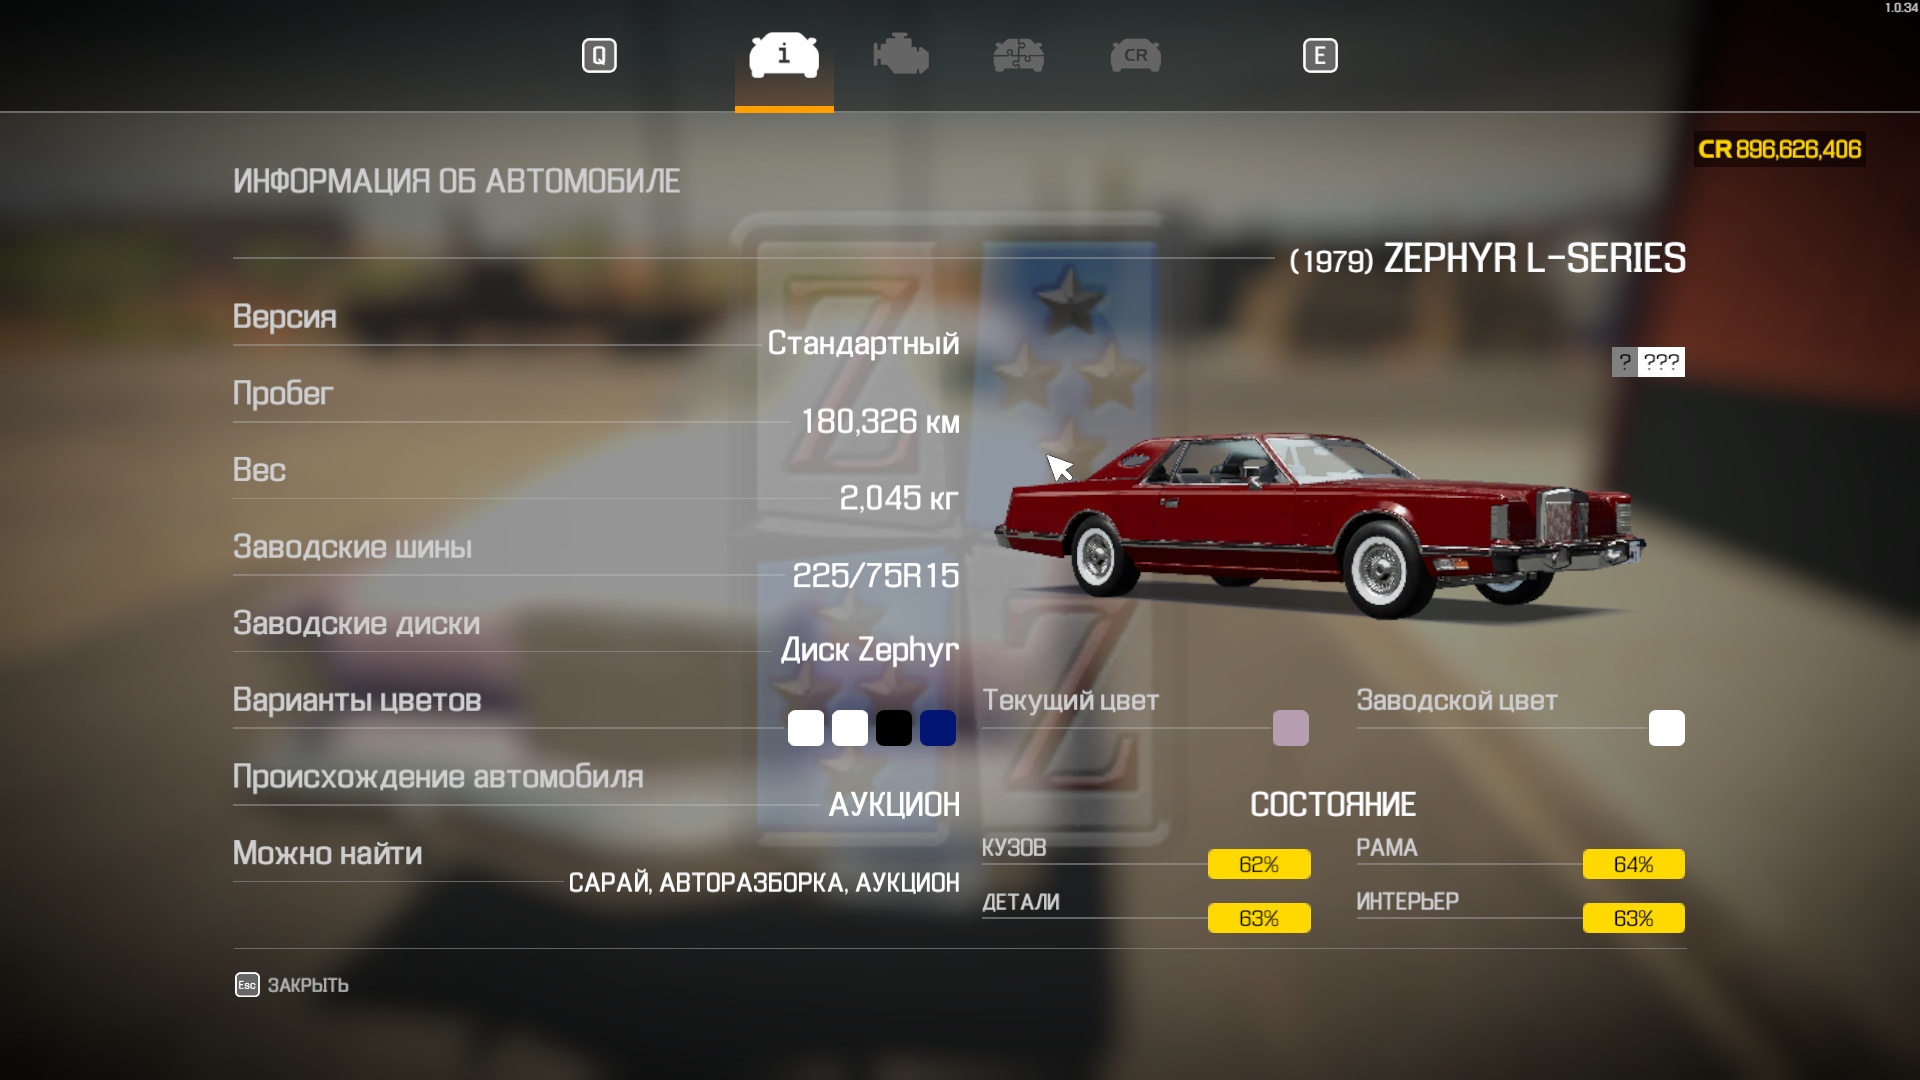 Car Mechanic Simulator 2021.Zephyr L-Series